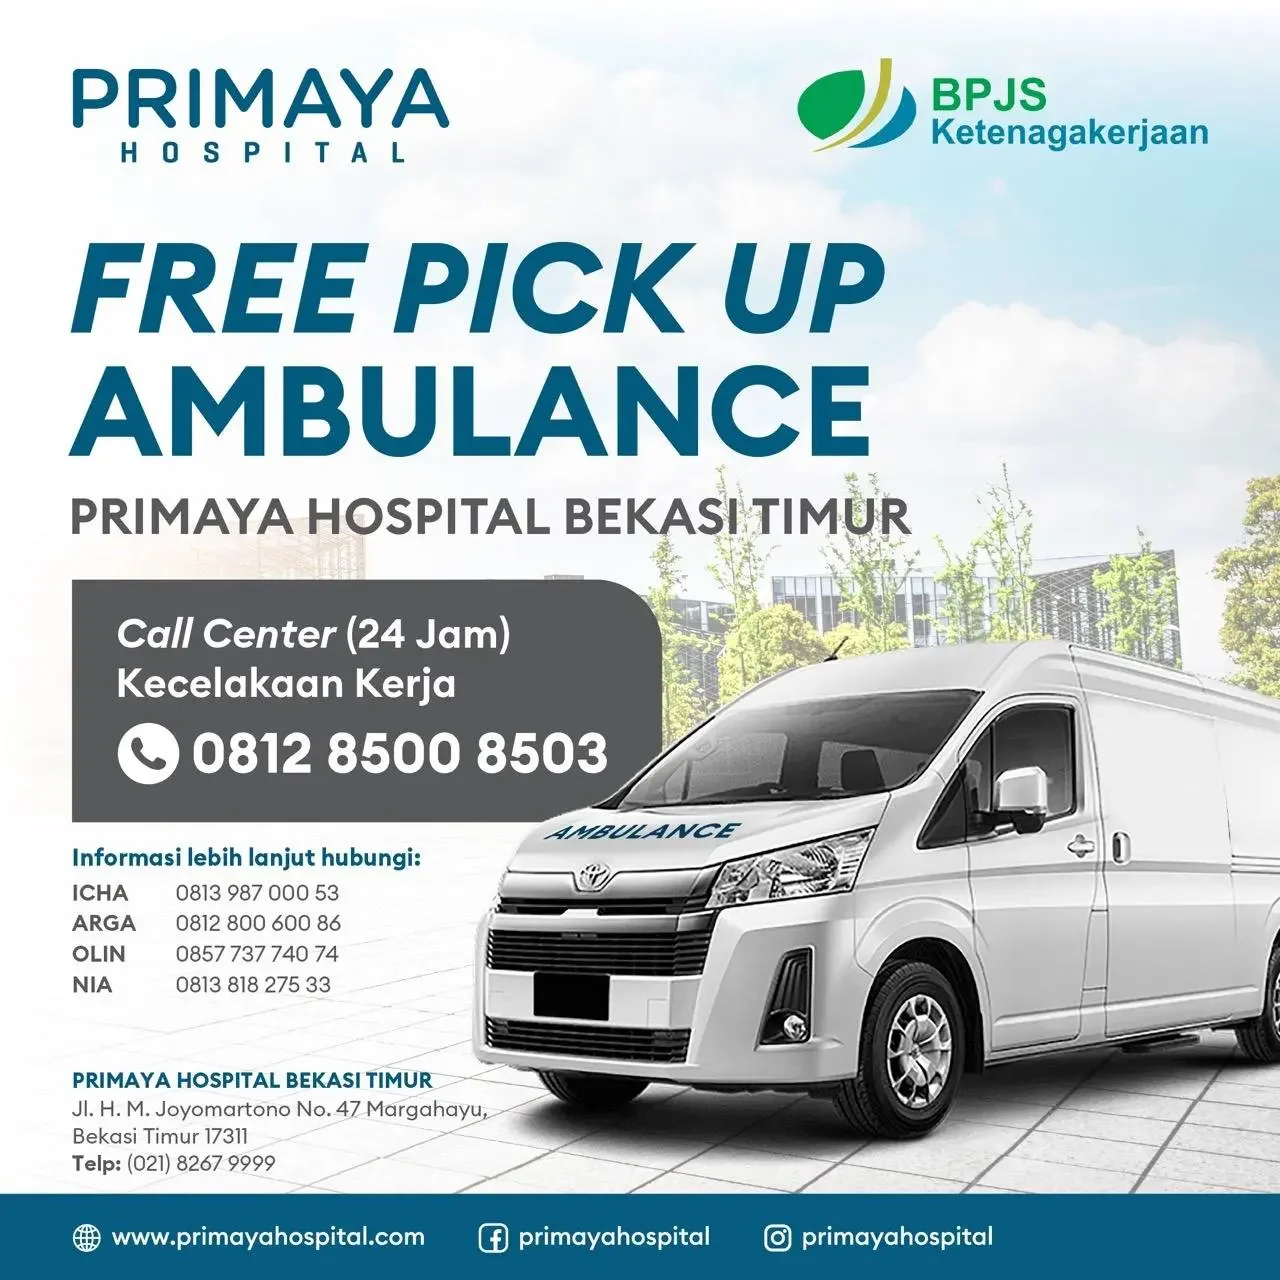 free pickup ambulance Primaya Hospital Bekasi Timur